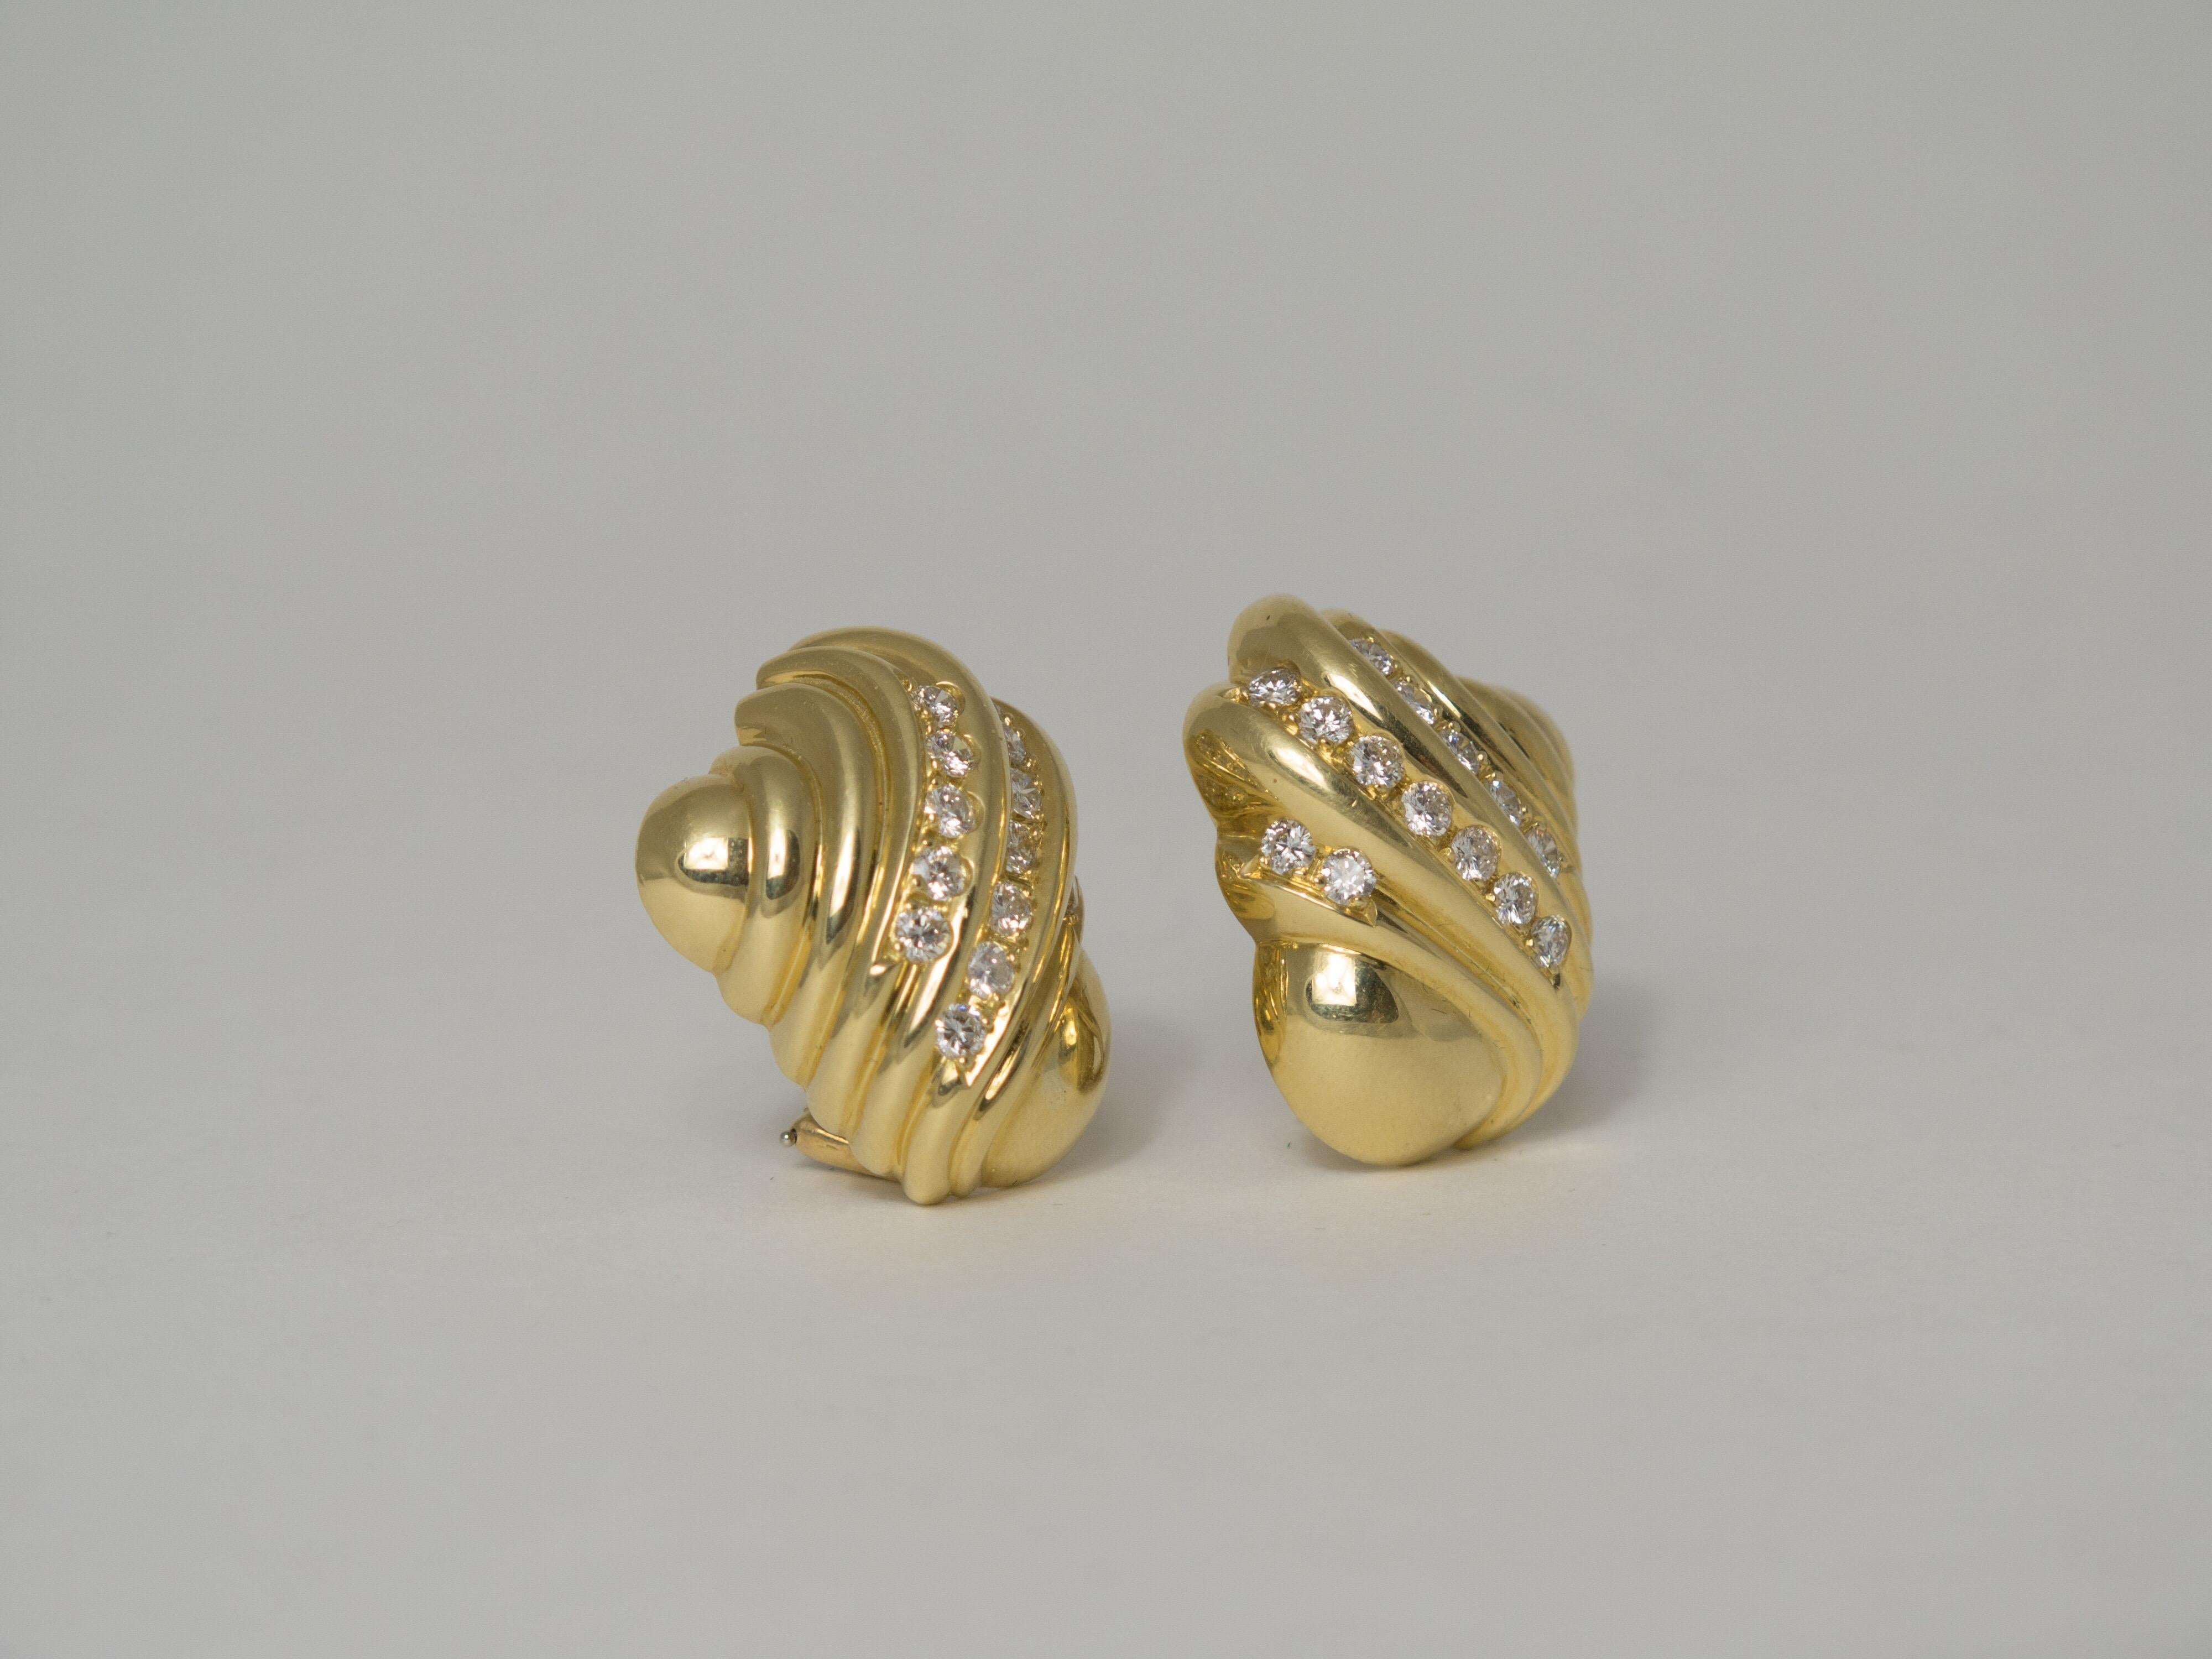 Une paire classique de boucles d'oreilles à clip en forme de coquillage turbo en or jaune 18 carats, rehaussée d'une bande incurvée de diamants qui suivent les lignes naturelles de la forme du coquillage. 
Les boucles d'oreilles sont lourdes, pesant